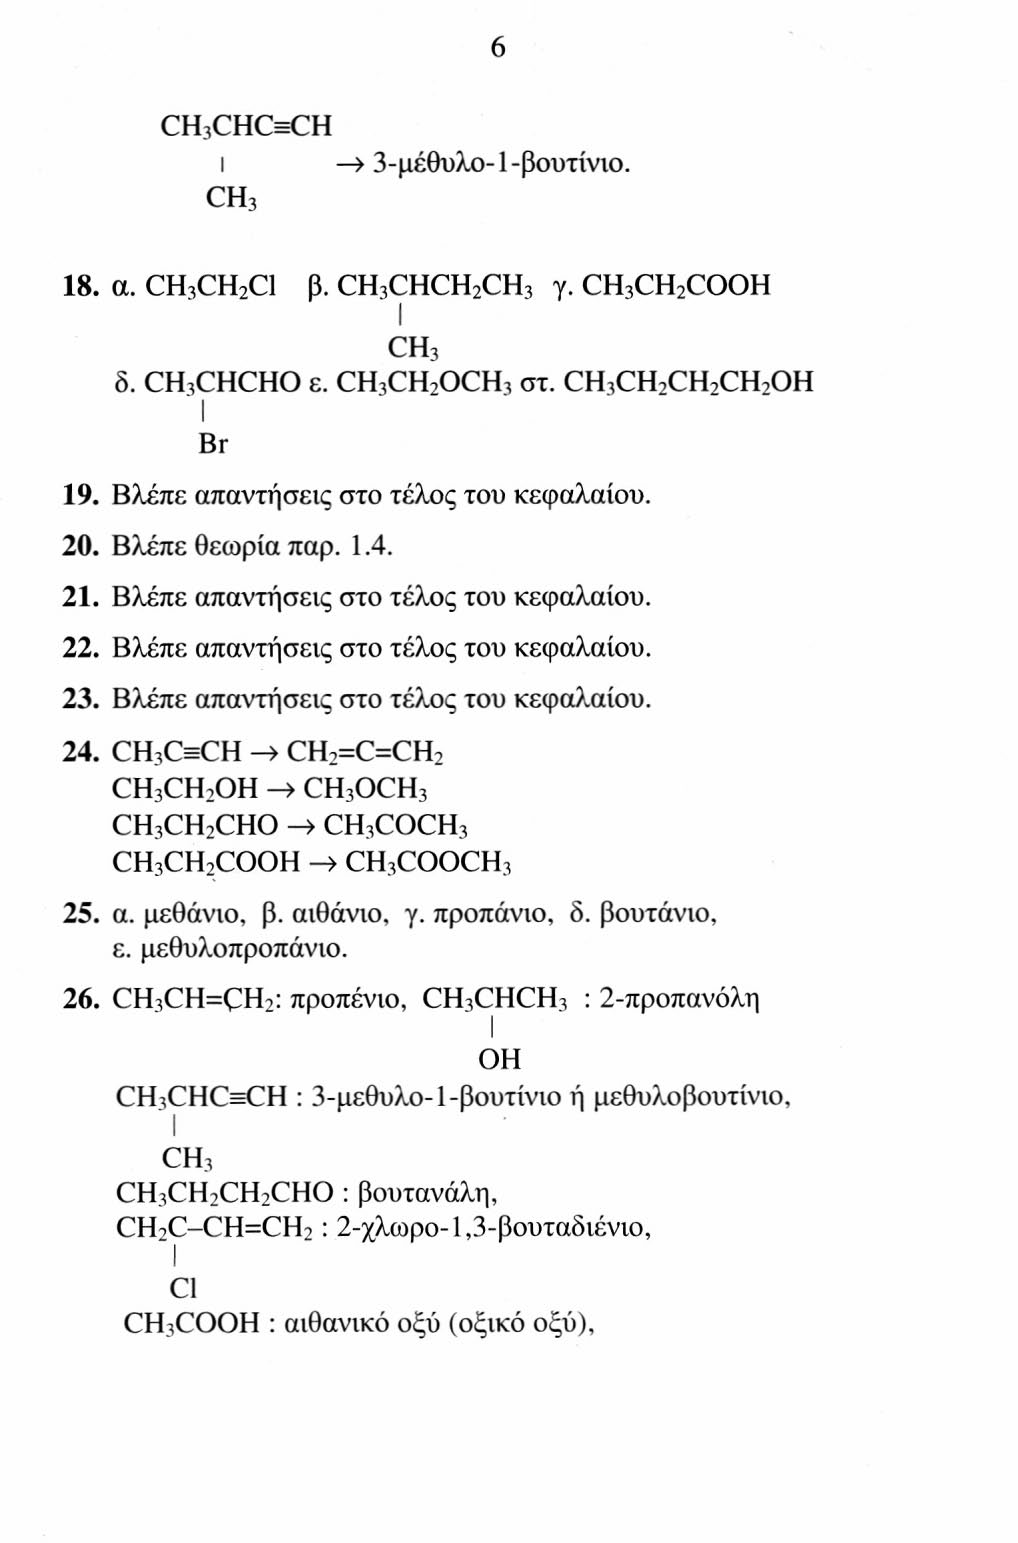 CH 3 CHCHCH 3 CH,CH,CHCH 3 I l I l OH CH 3 OH CH 3 3-μεθυλο-2-βουτανόλη 3-μεθυλο-1 -βουτανόλη CH 3 * I CH 3 CCHiOH I CH 3 διμεθυλοπροπανόλη γ) CH 3 CH 2 CH 2 COOH CH 3 CHCOOH βουτανικό οξύ I CH 3